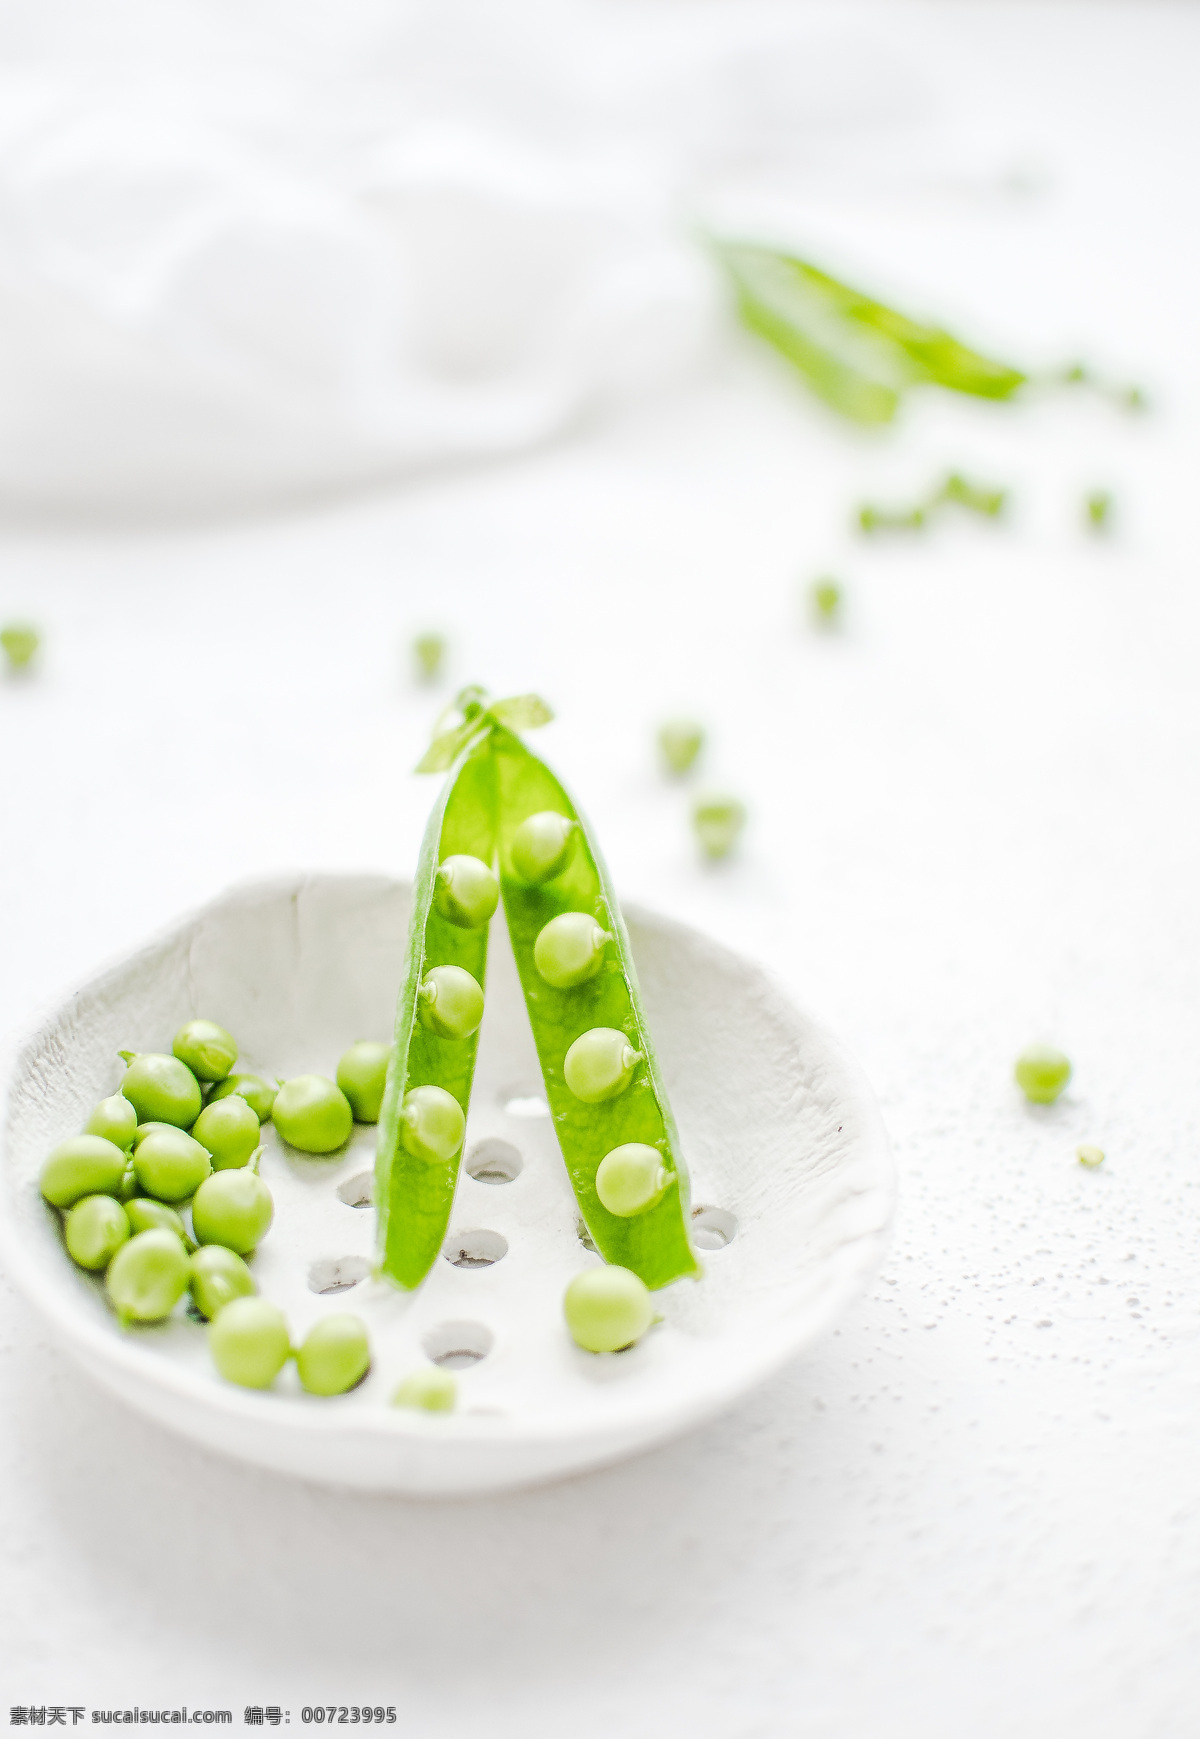 豌豆 美味图片 绿色 清新 美食 健康 美味 食物 食材 蔬菜 餐饮美食 食物原料